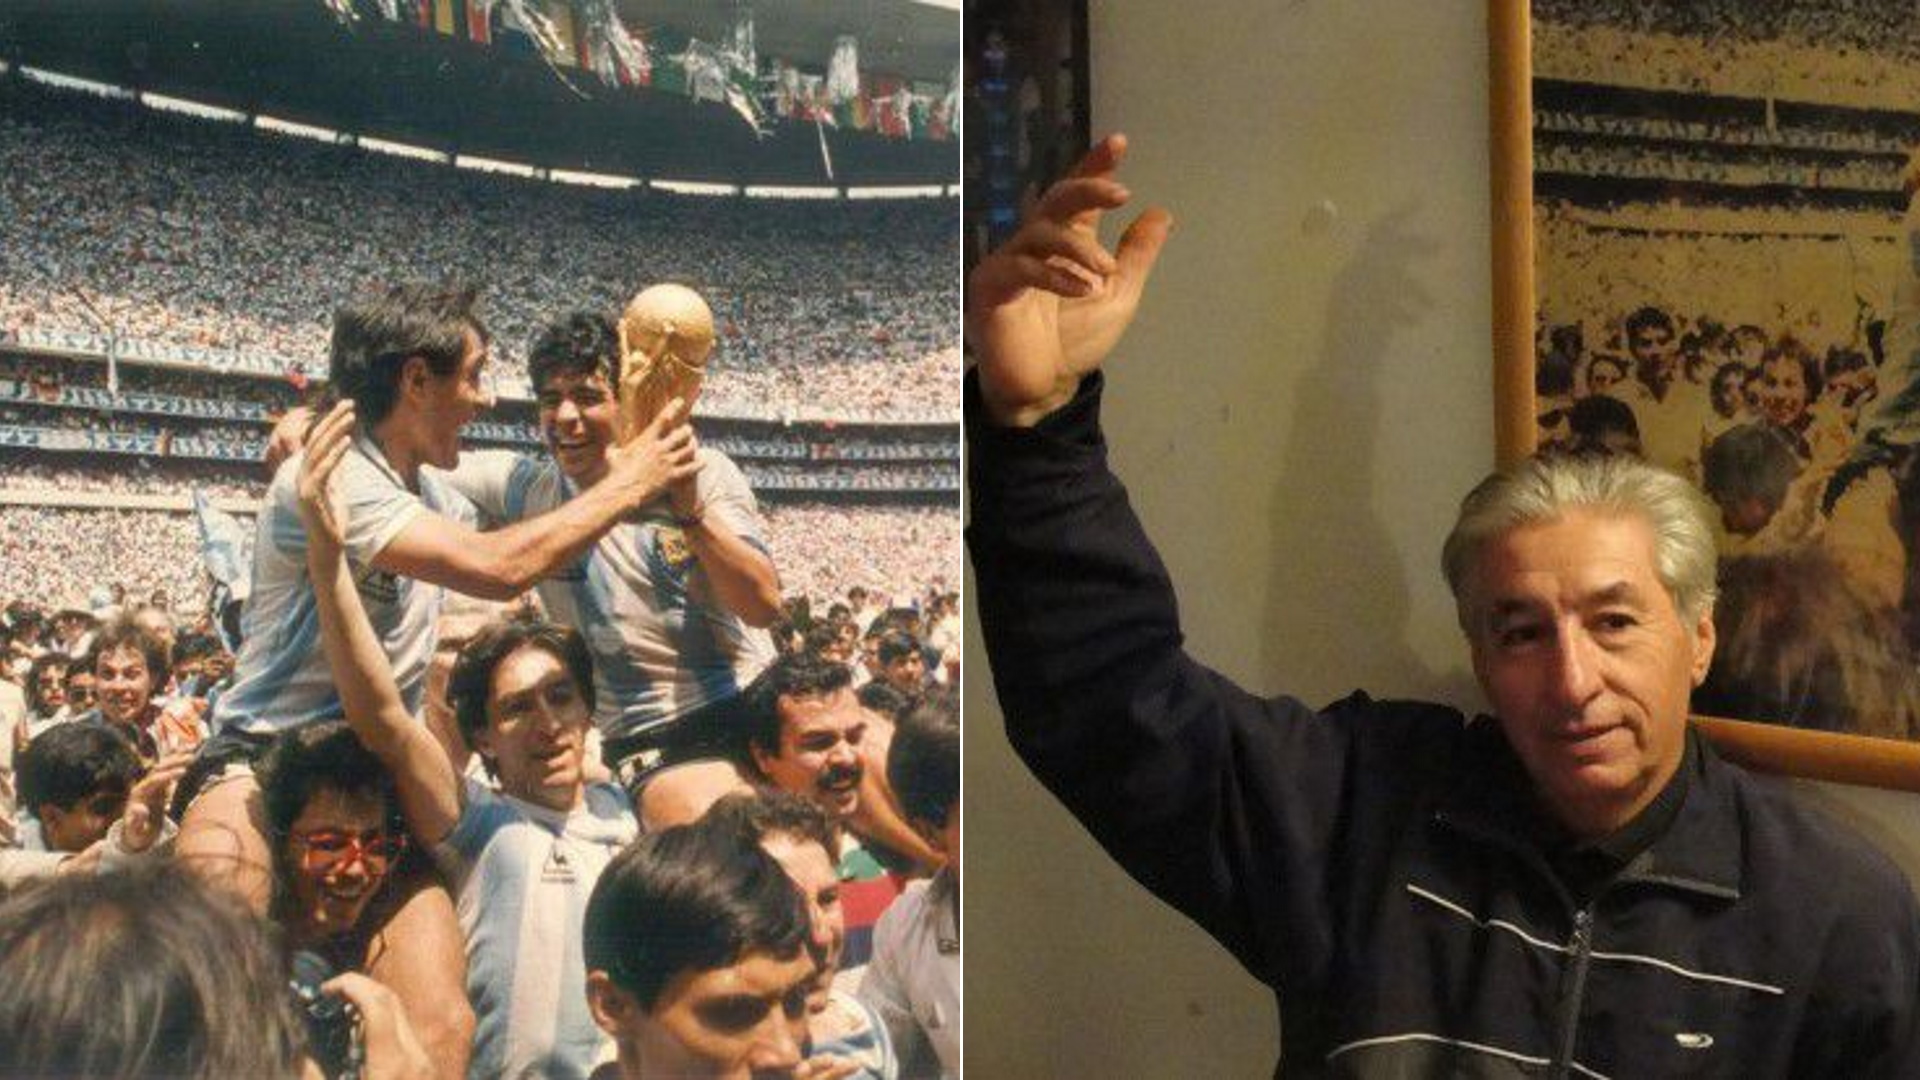 El antes y el después de Gustavo Jorge Ripke, el "jugador fantasma" de la celebración del título en México 1986 (Crédito: Fabio.com.ar)